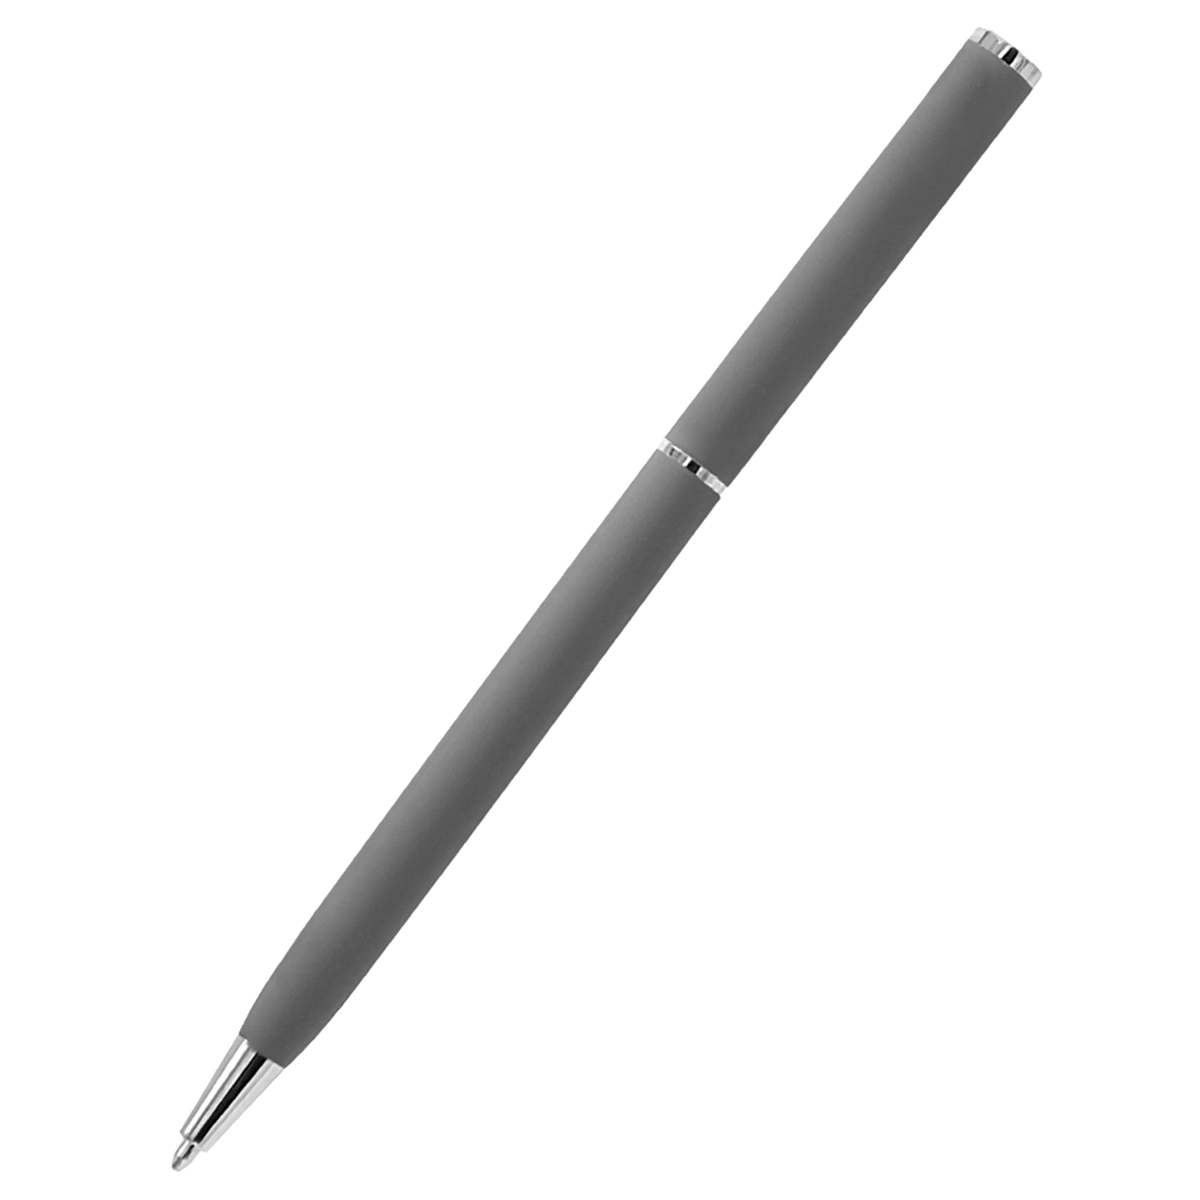 Ручка металлическая Tinny Soft софт-тач, серая, серый